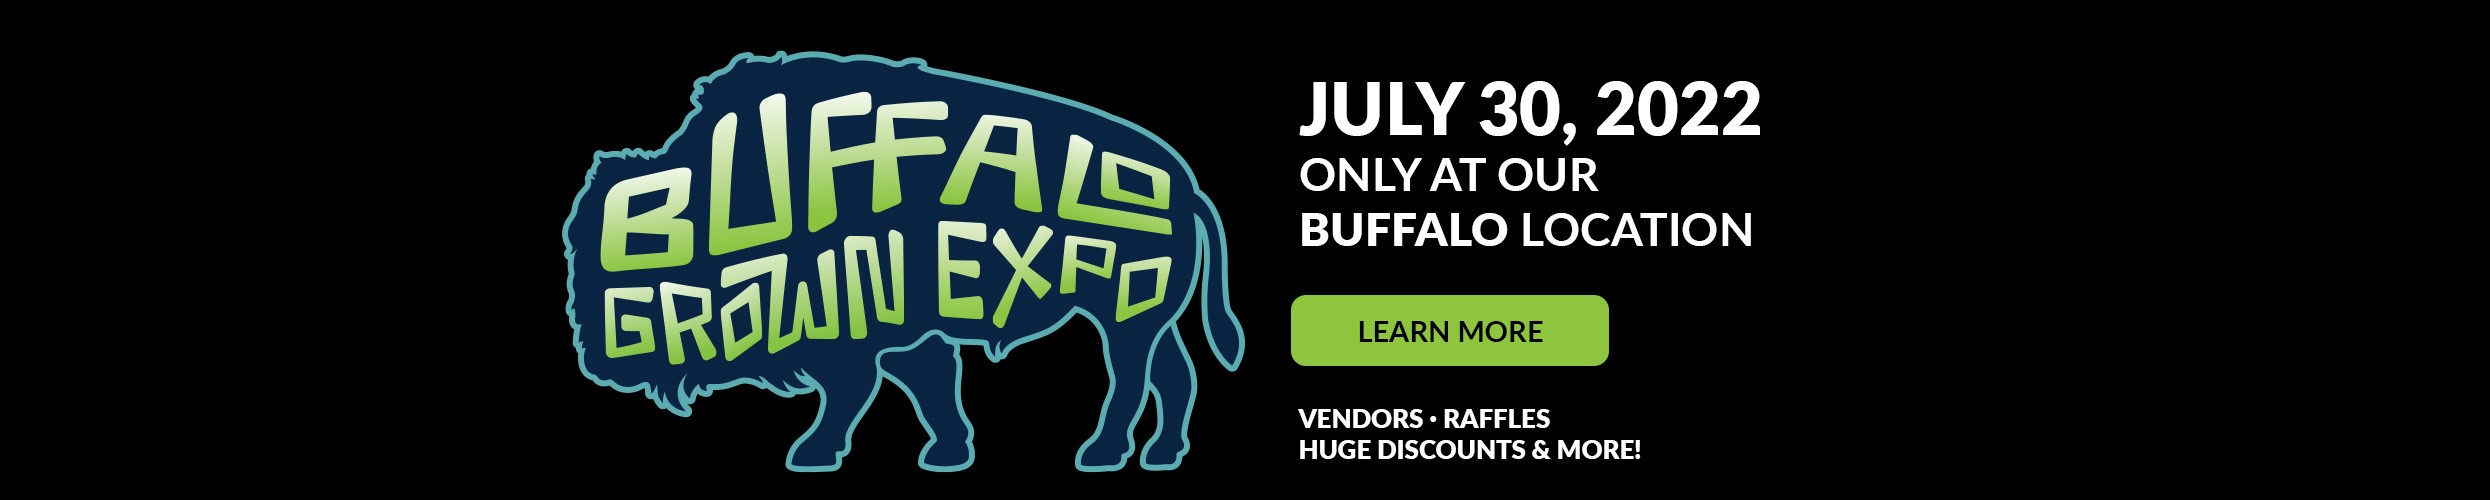 Buffalo Grown Expo 2022